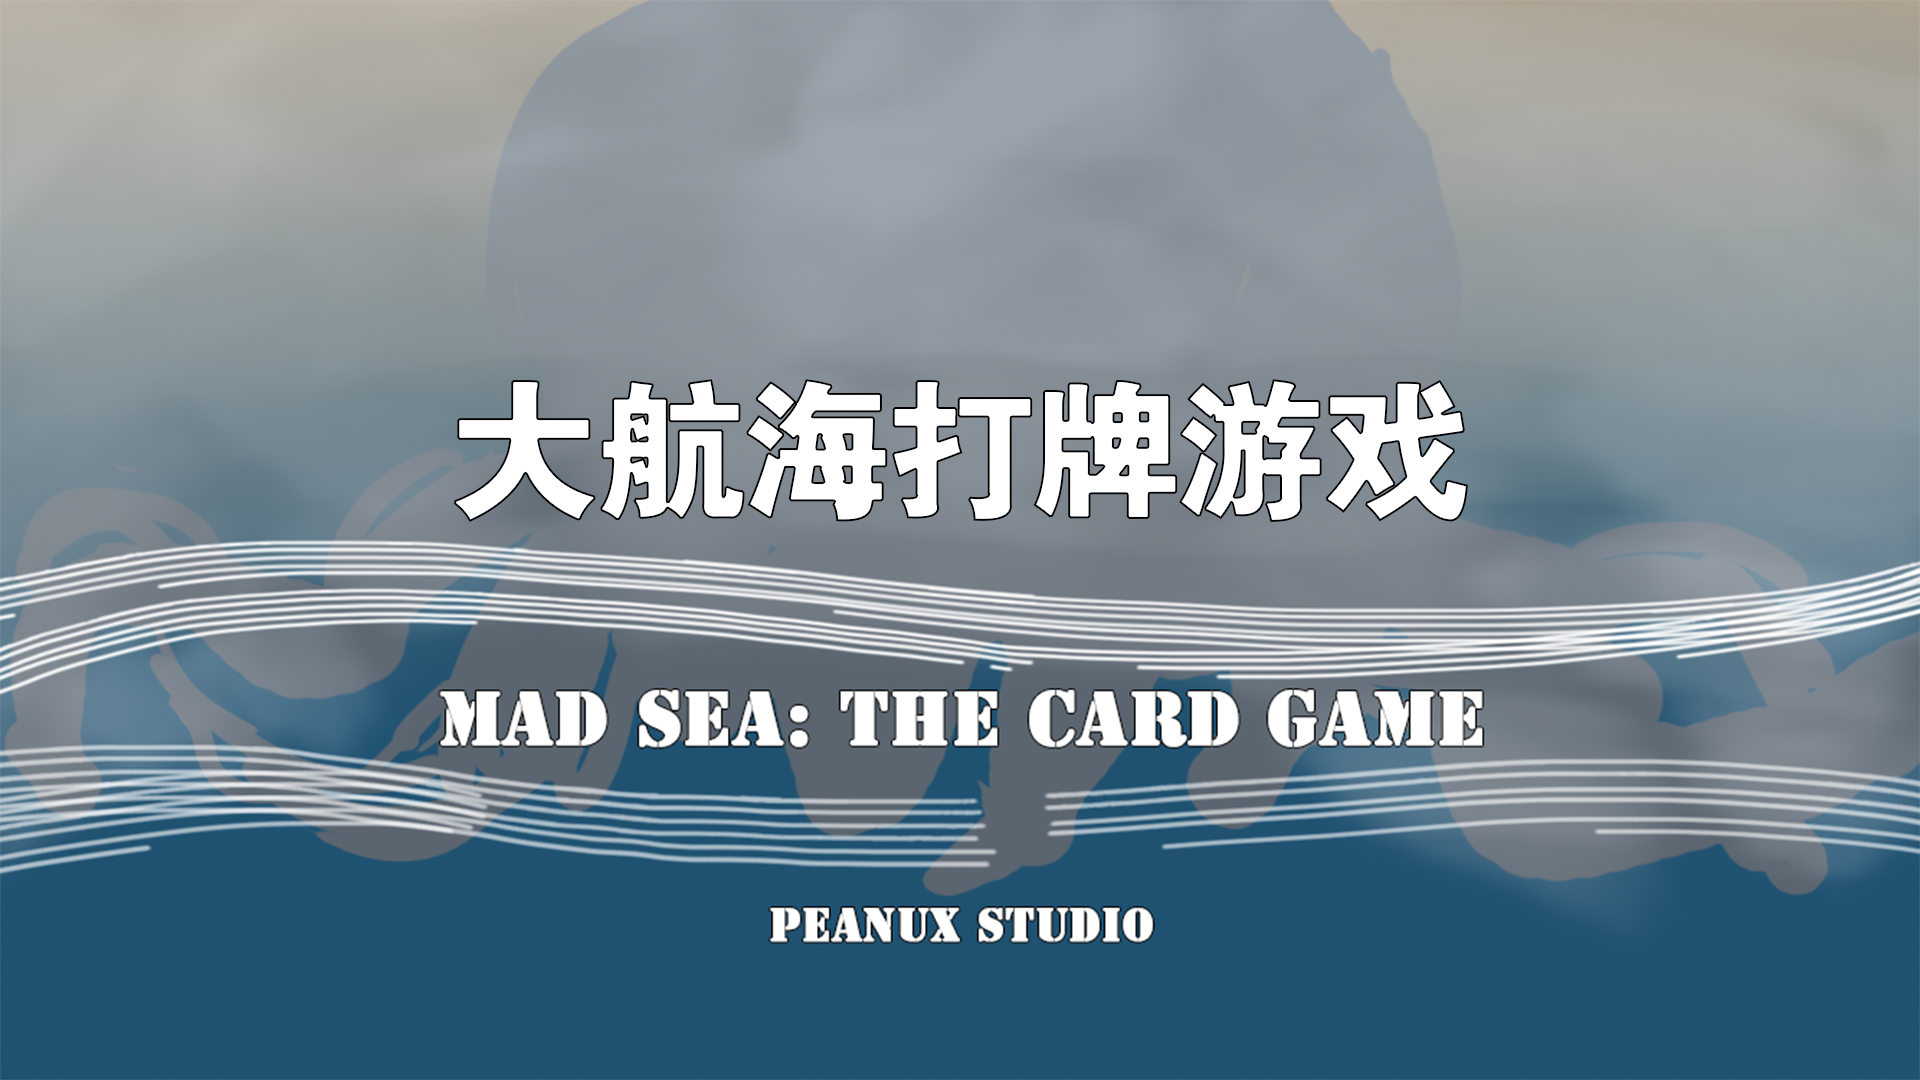 Banner of 大航海カードゲーム 